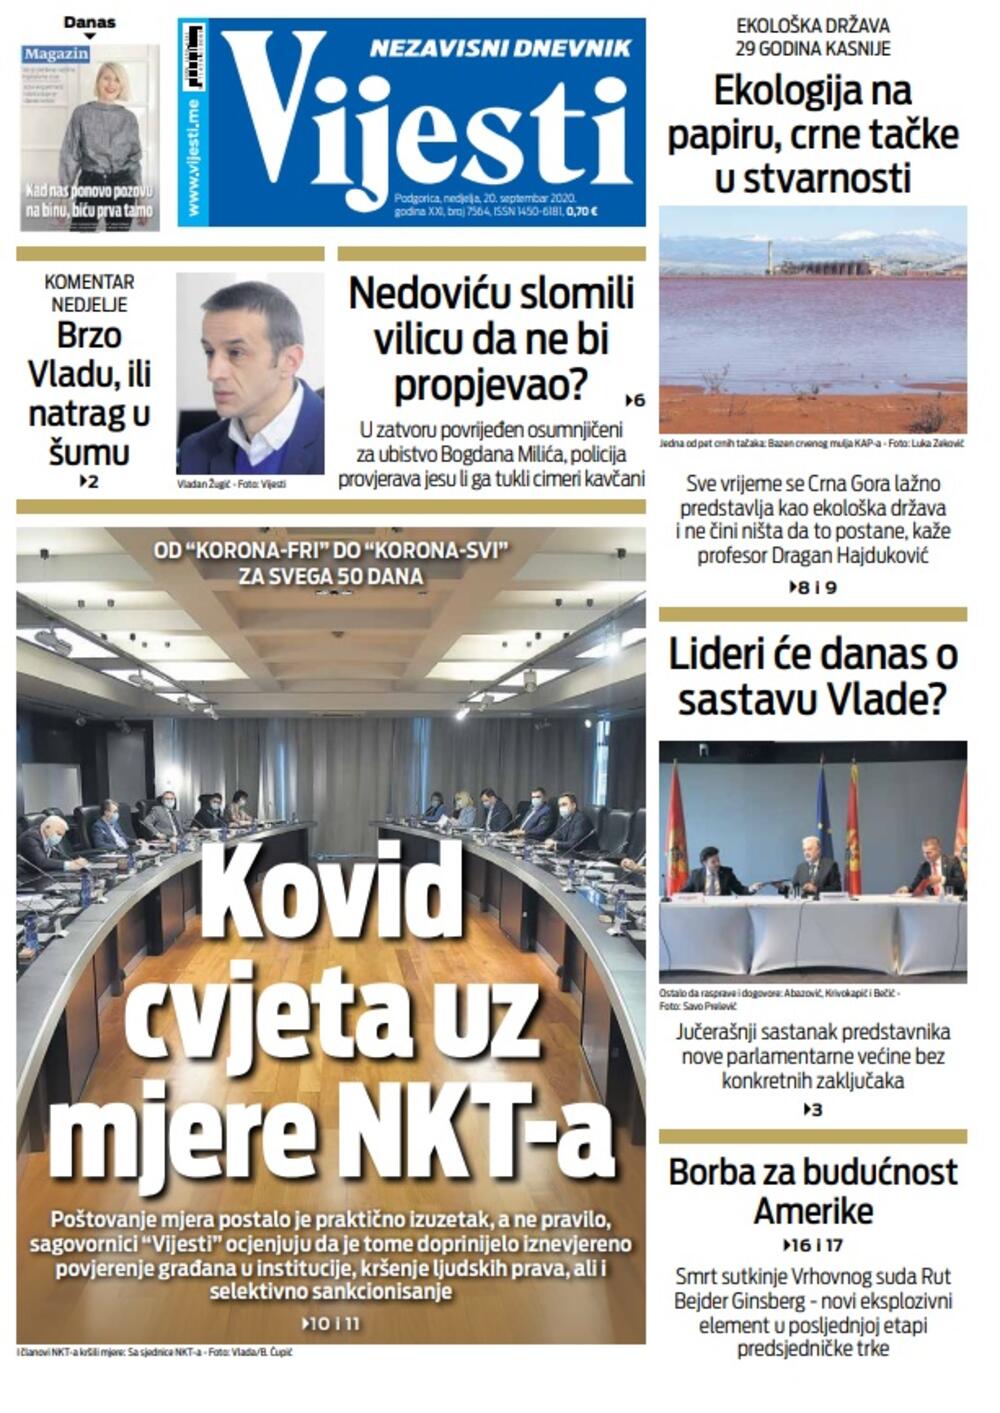 Naslovna strana "Vijesti" za nedjelju 20. septembar 2020. godine, Foto: Vijesti